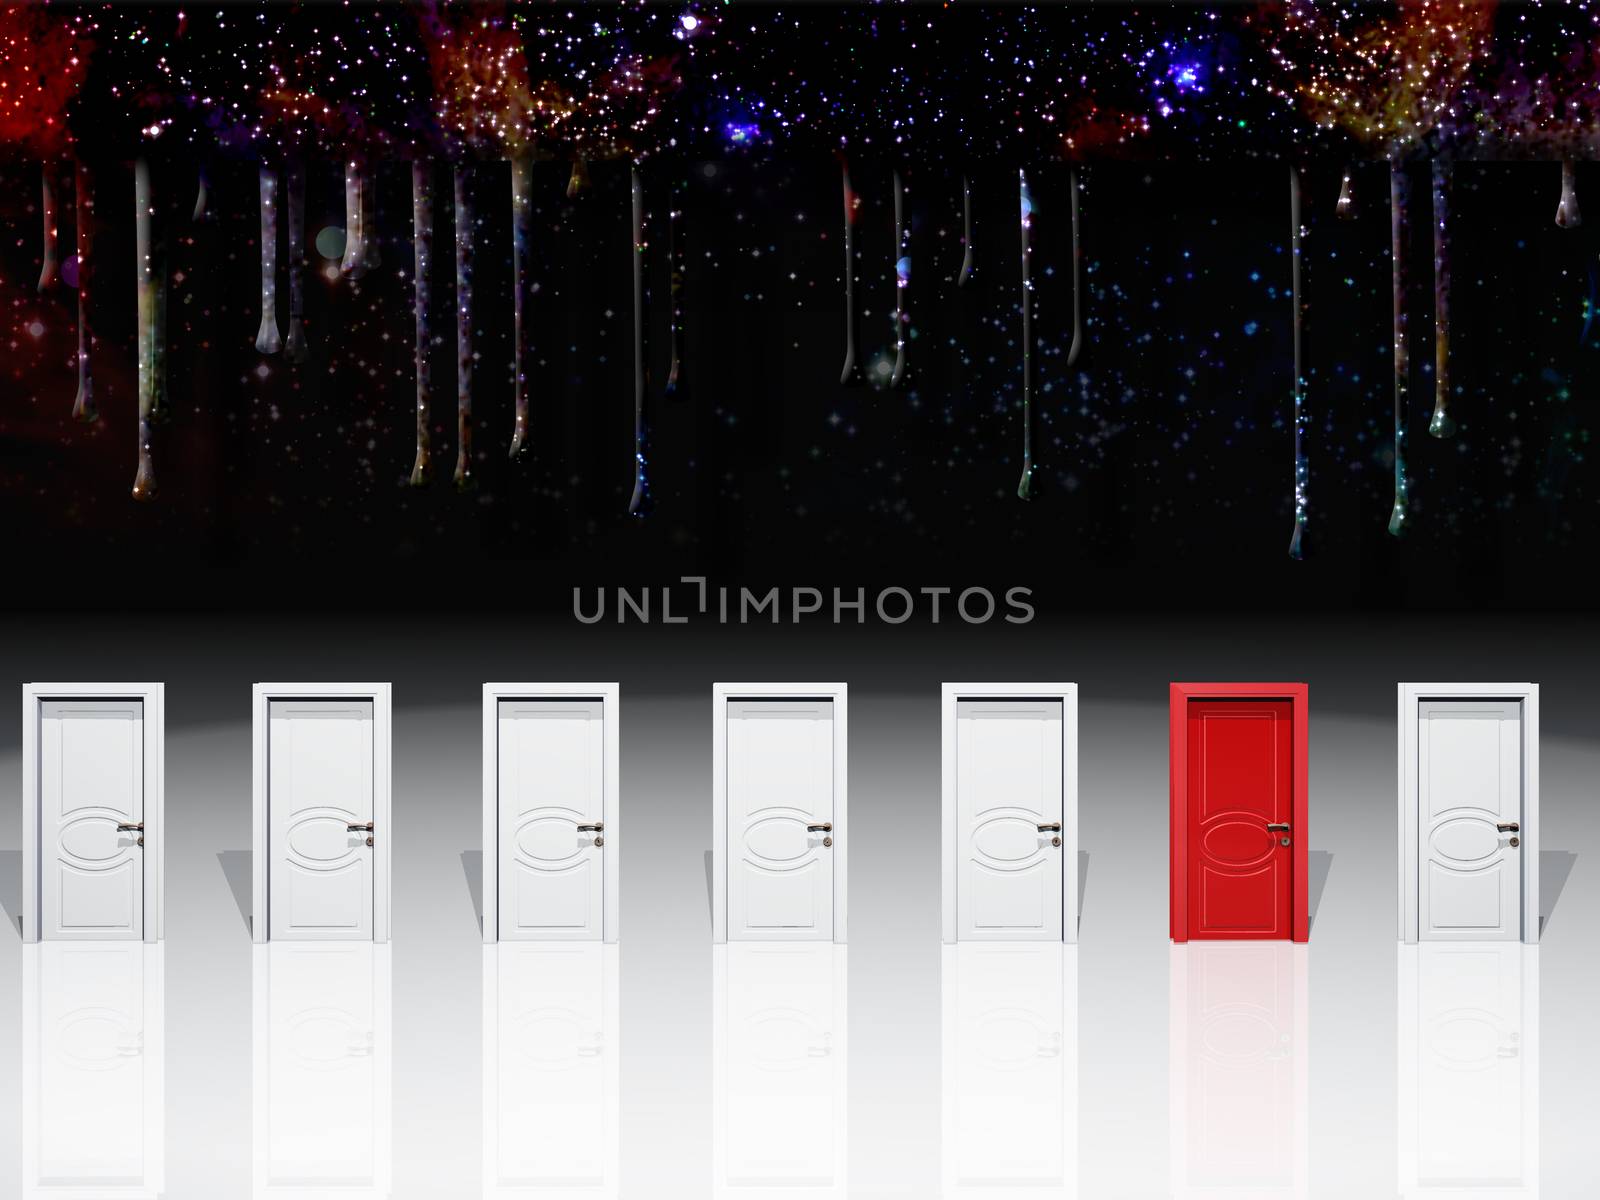 Surreal digital art. Seven white door with one red door. 3D rendering